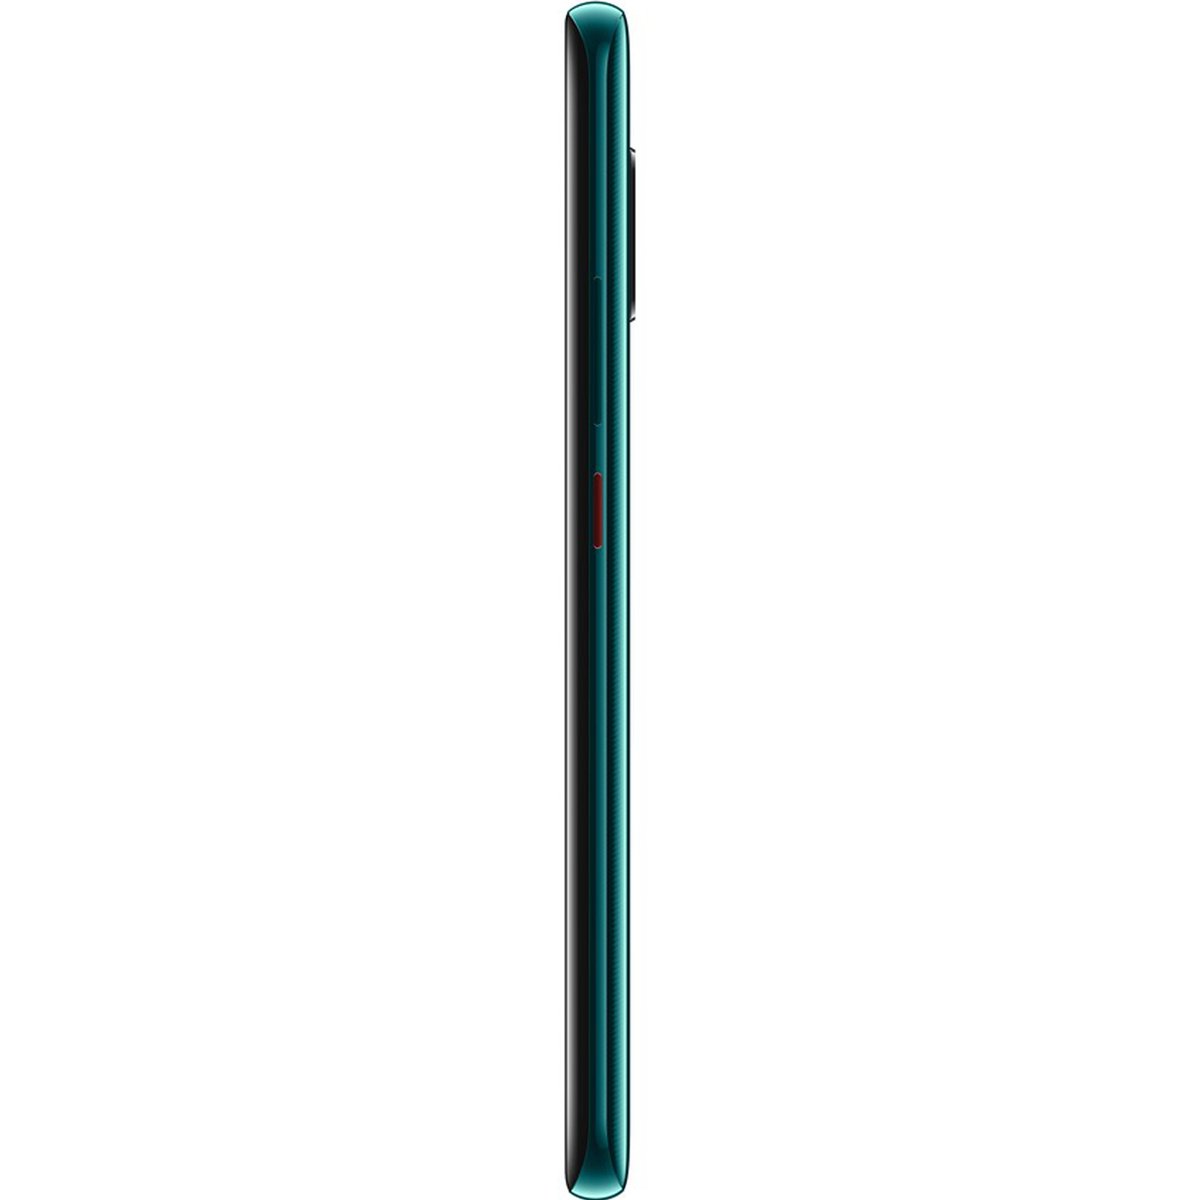 Huawei Mate20 Pro 128GB Emerald Green